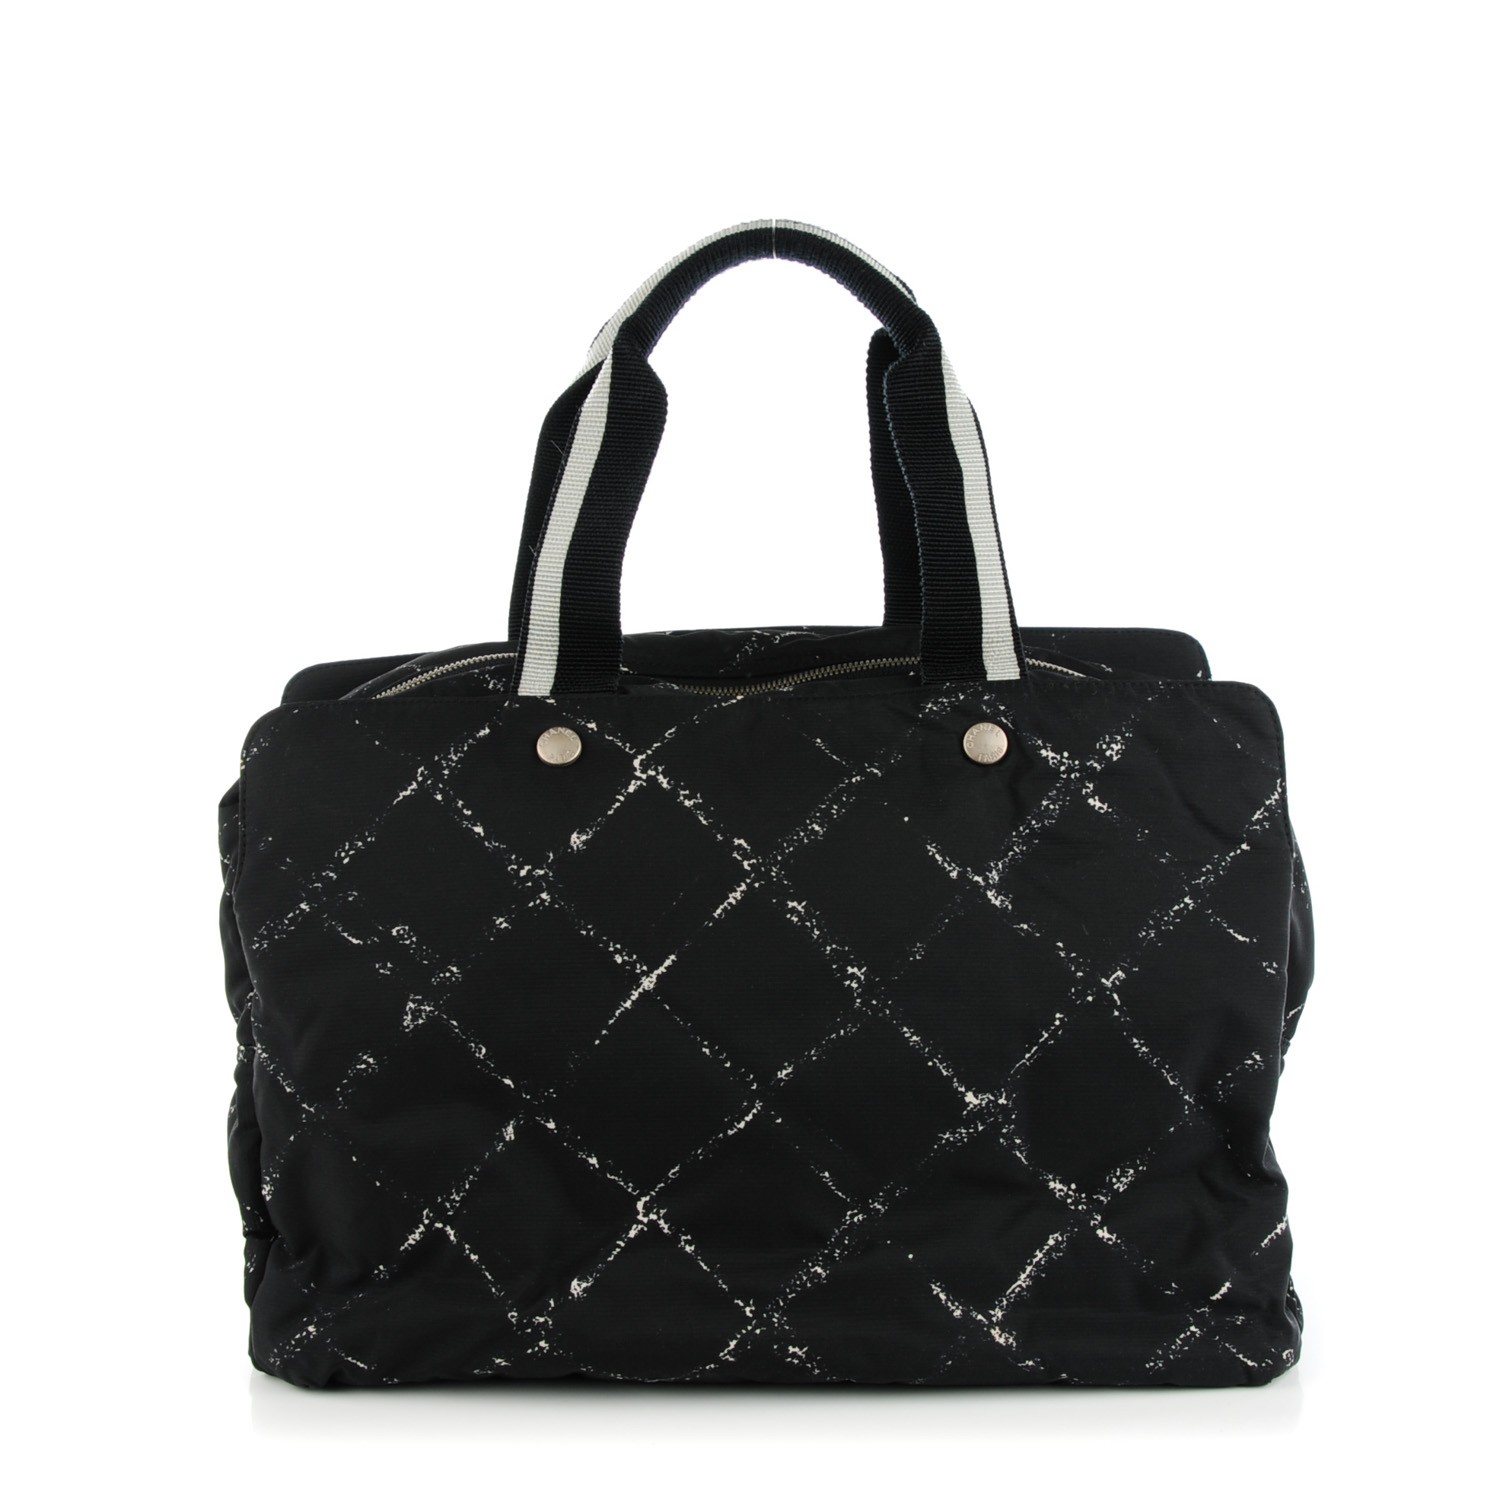 CHANEL Nylon Travel Duffel Bag Black 131274 | FASHIONPHILE